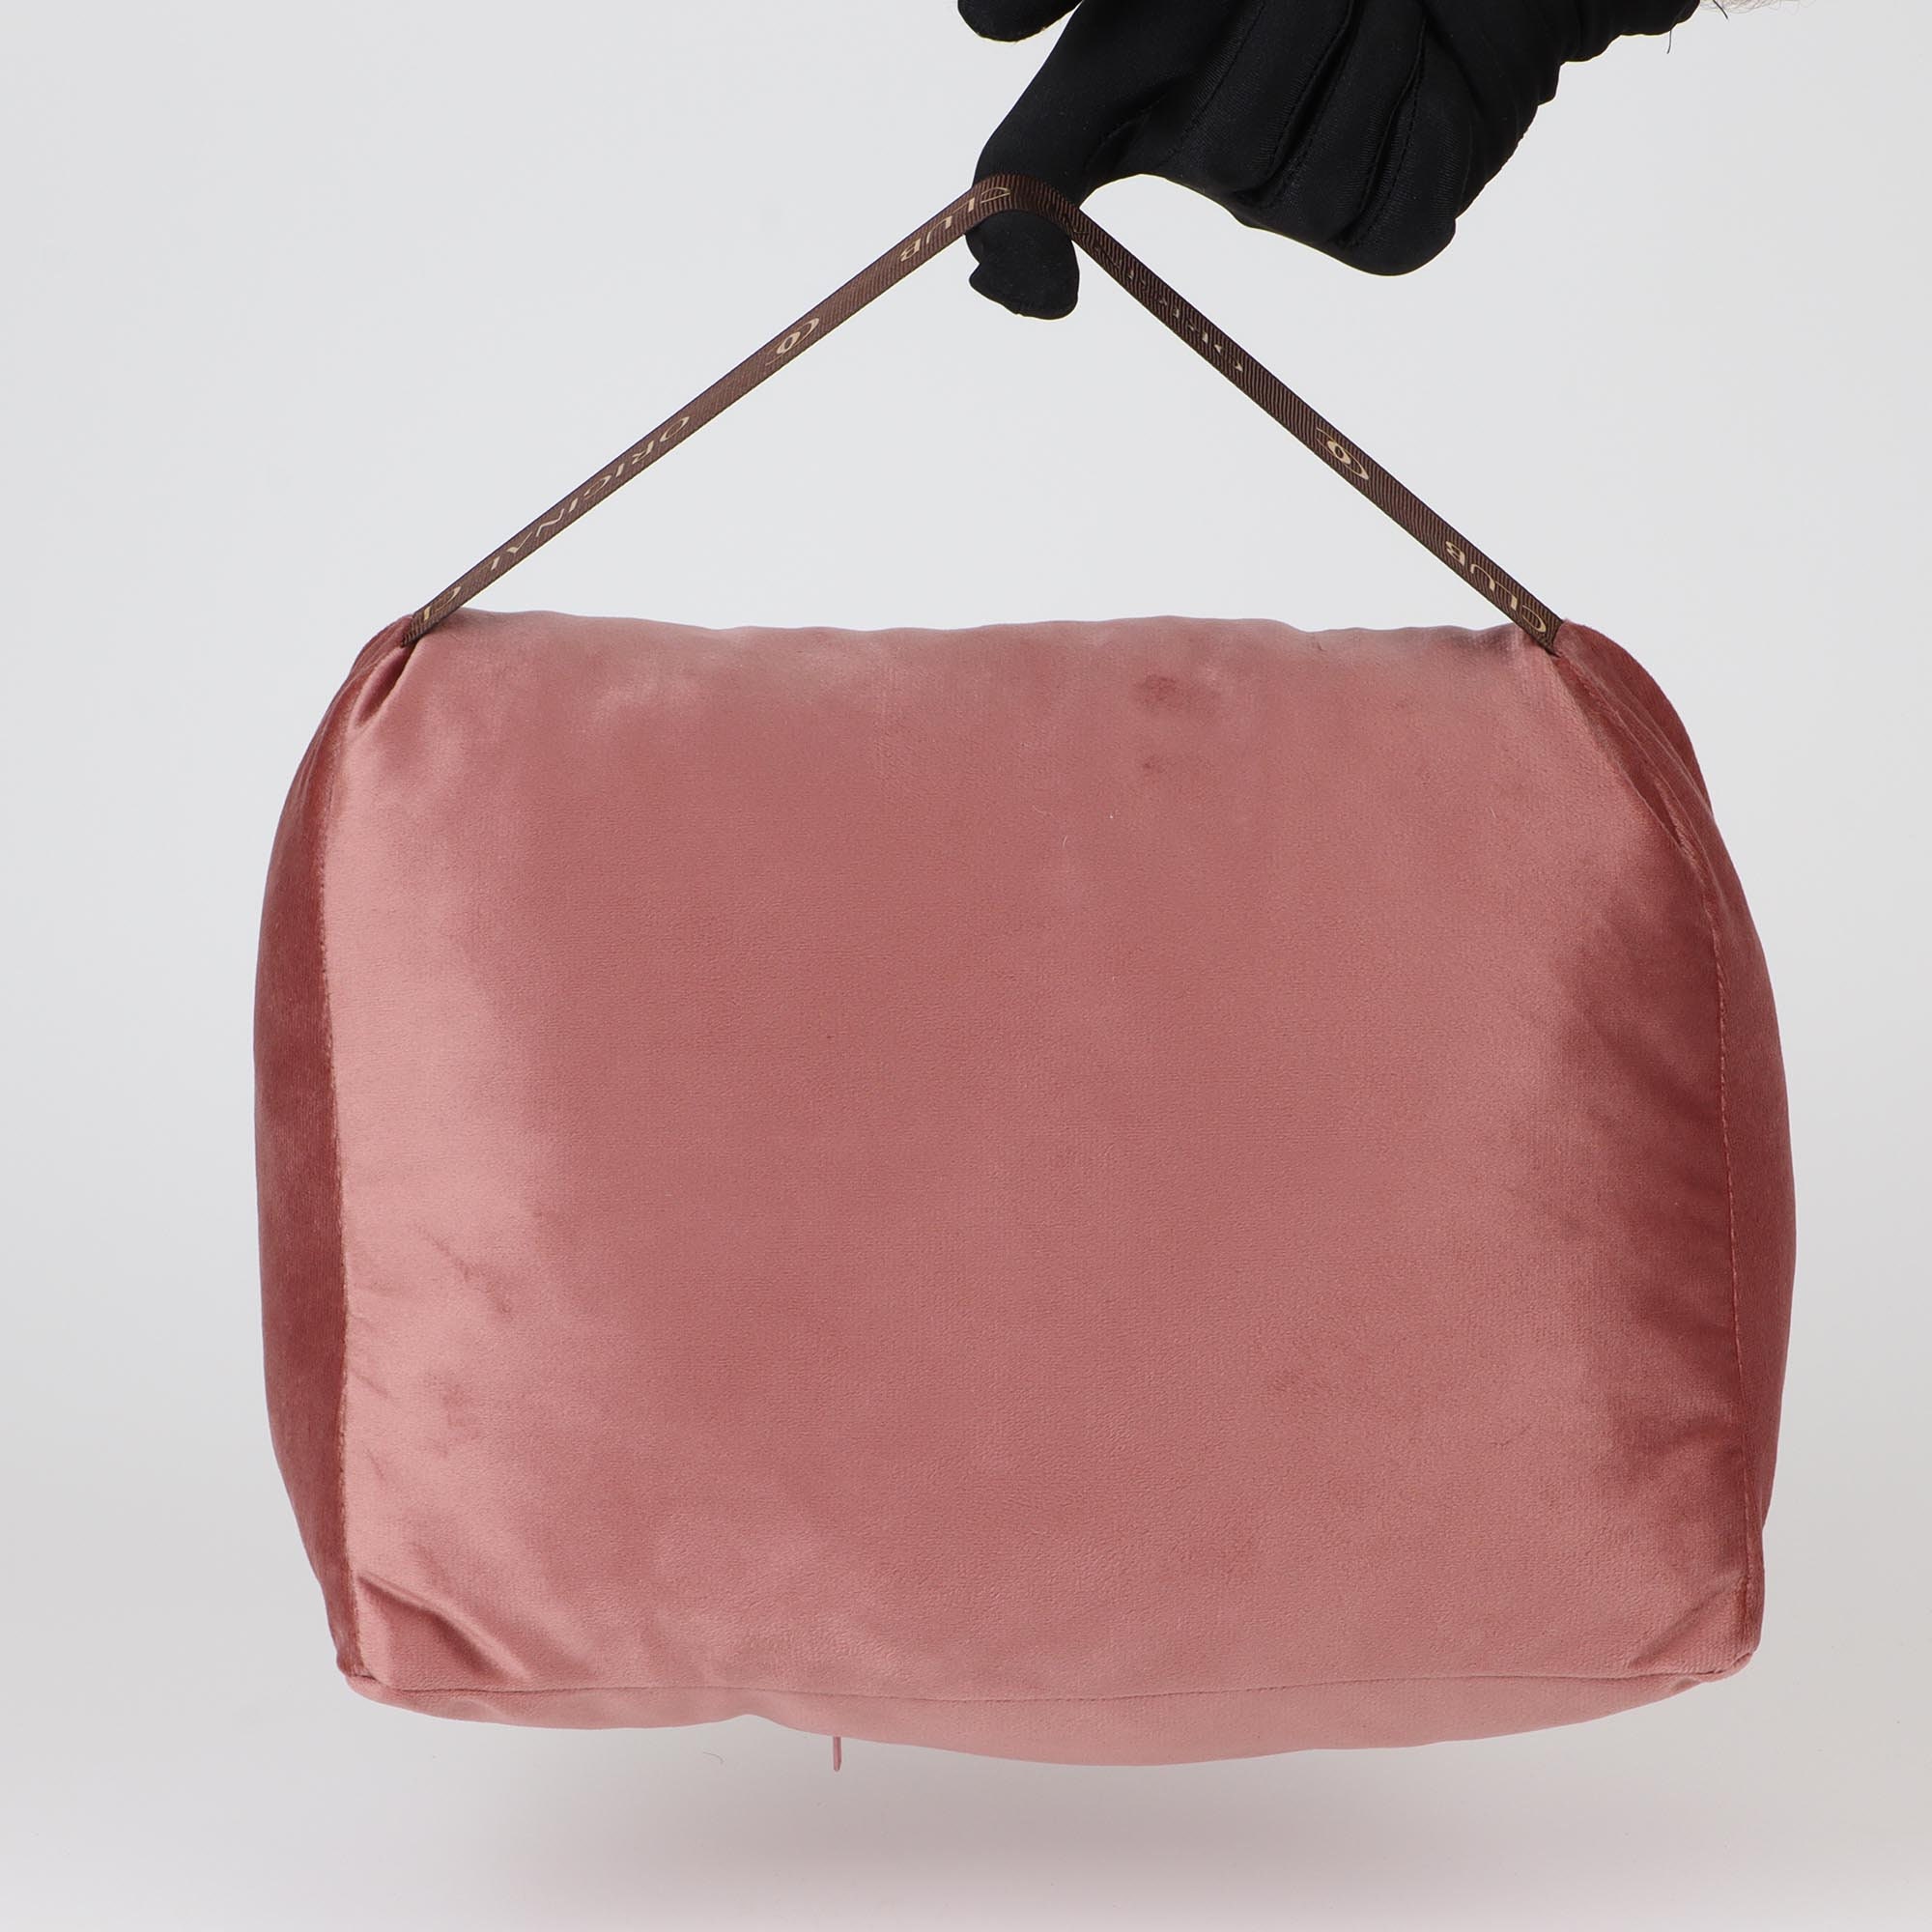 SP Velvet Bag Pillow Shaper in Rose Pink / Velvet Pillow Bag Shaper for SP  25, 30, 35, and 40 / SP Velvet Pillow Bag Shaper